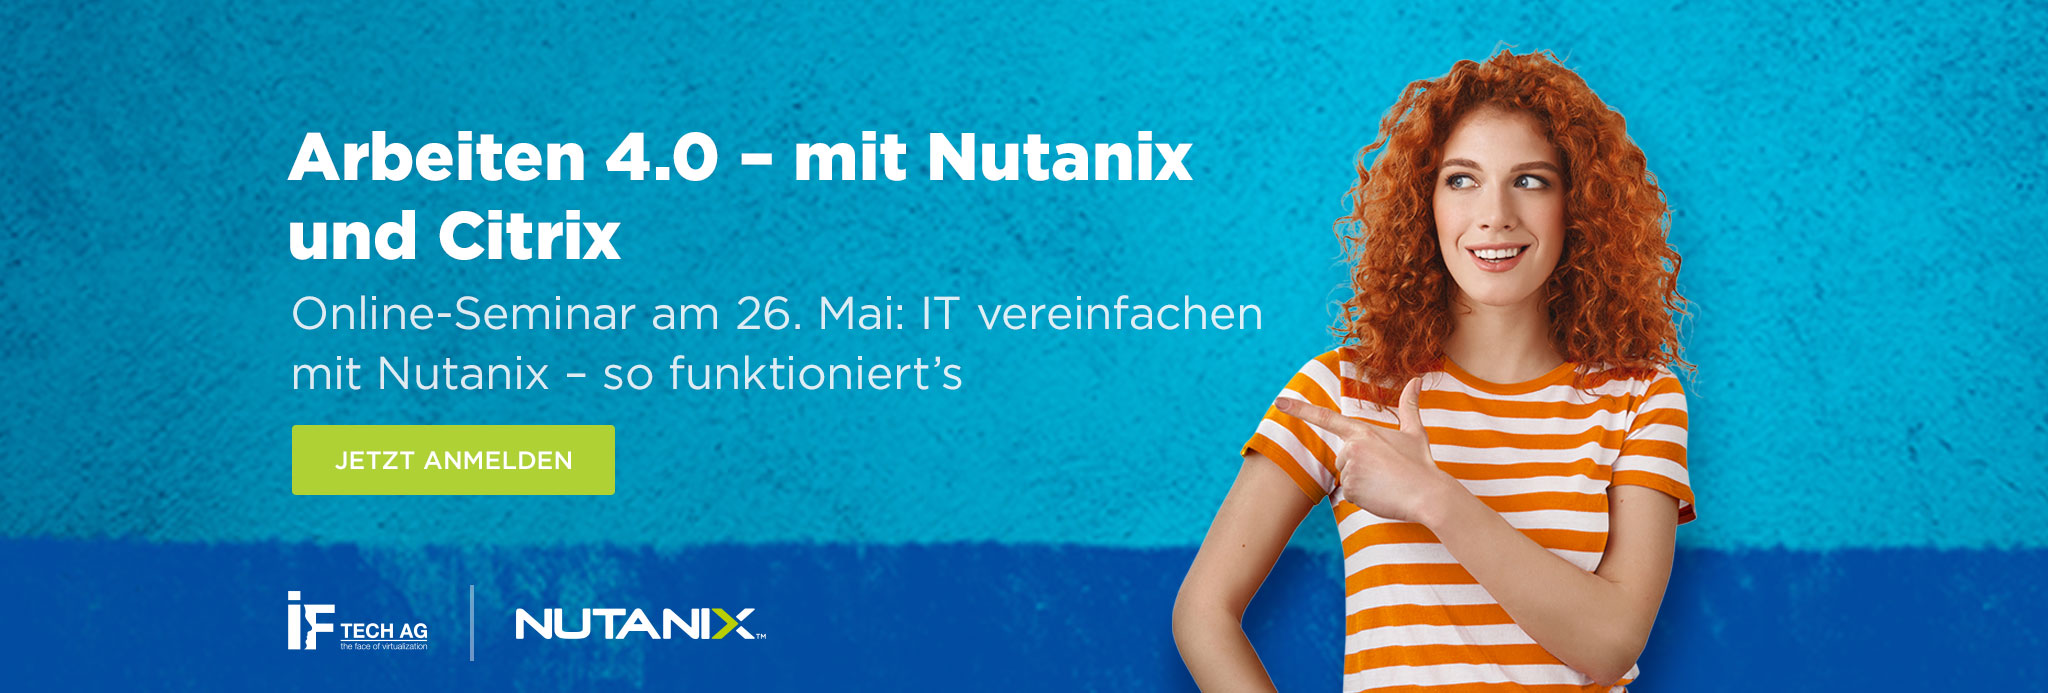 Arbeiten 4.0 mit Nutanix und Citrix: Webinar am 26. Mai